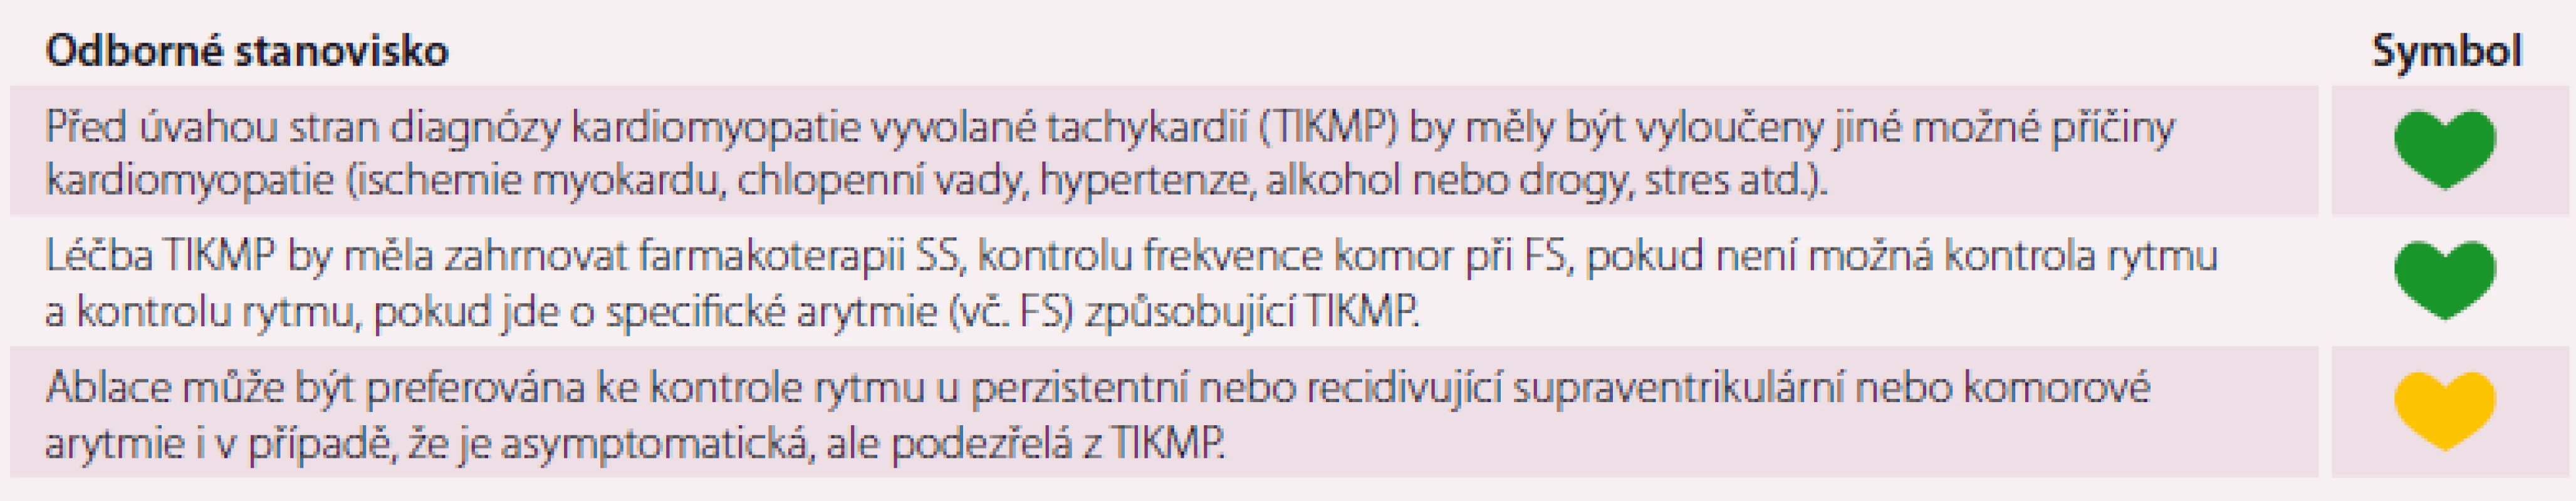 Souhlasné prohlášení k problematice TIKMP.